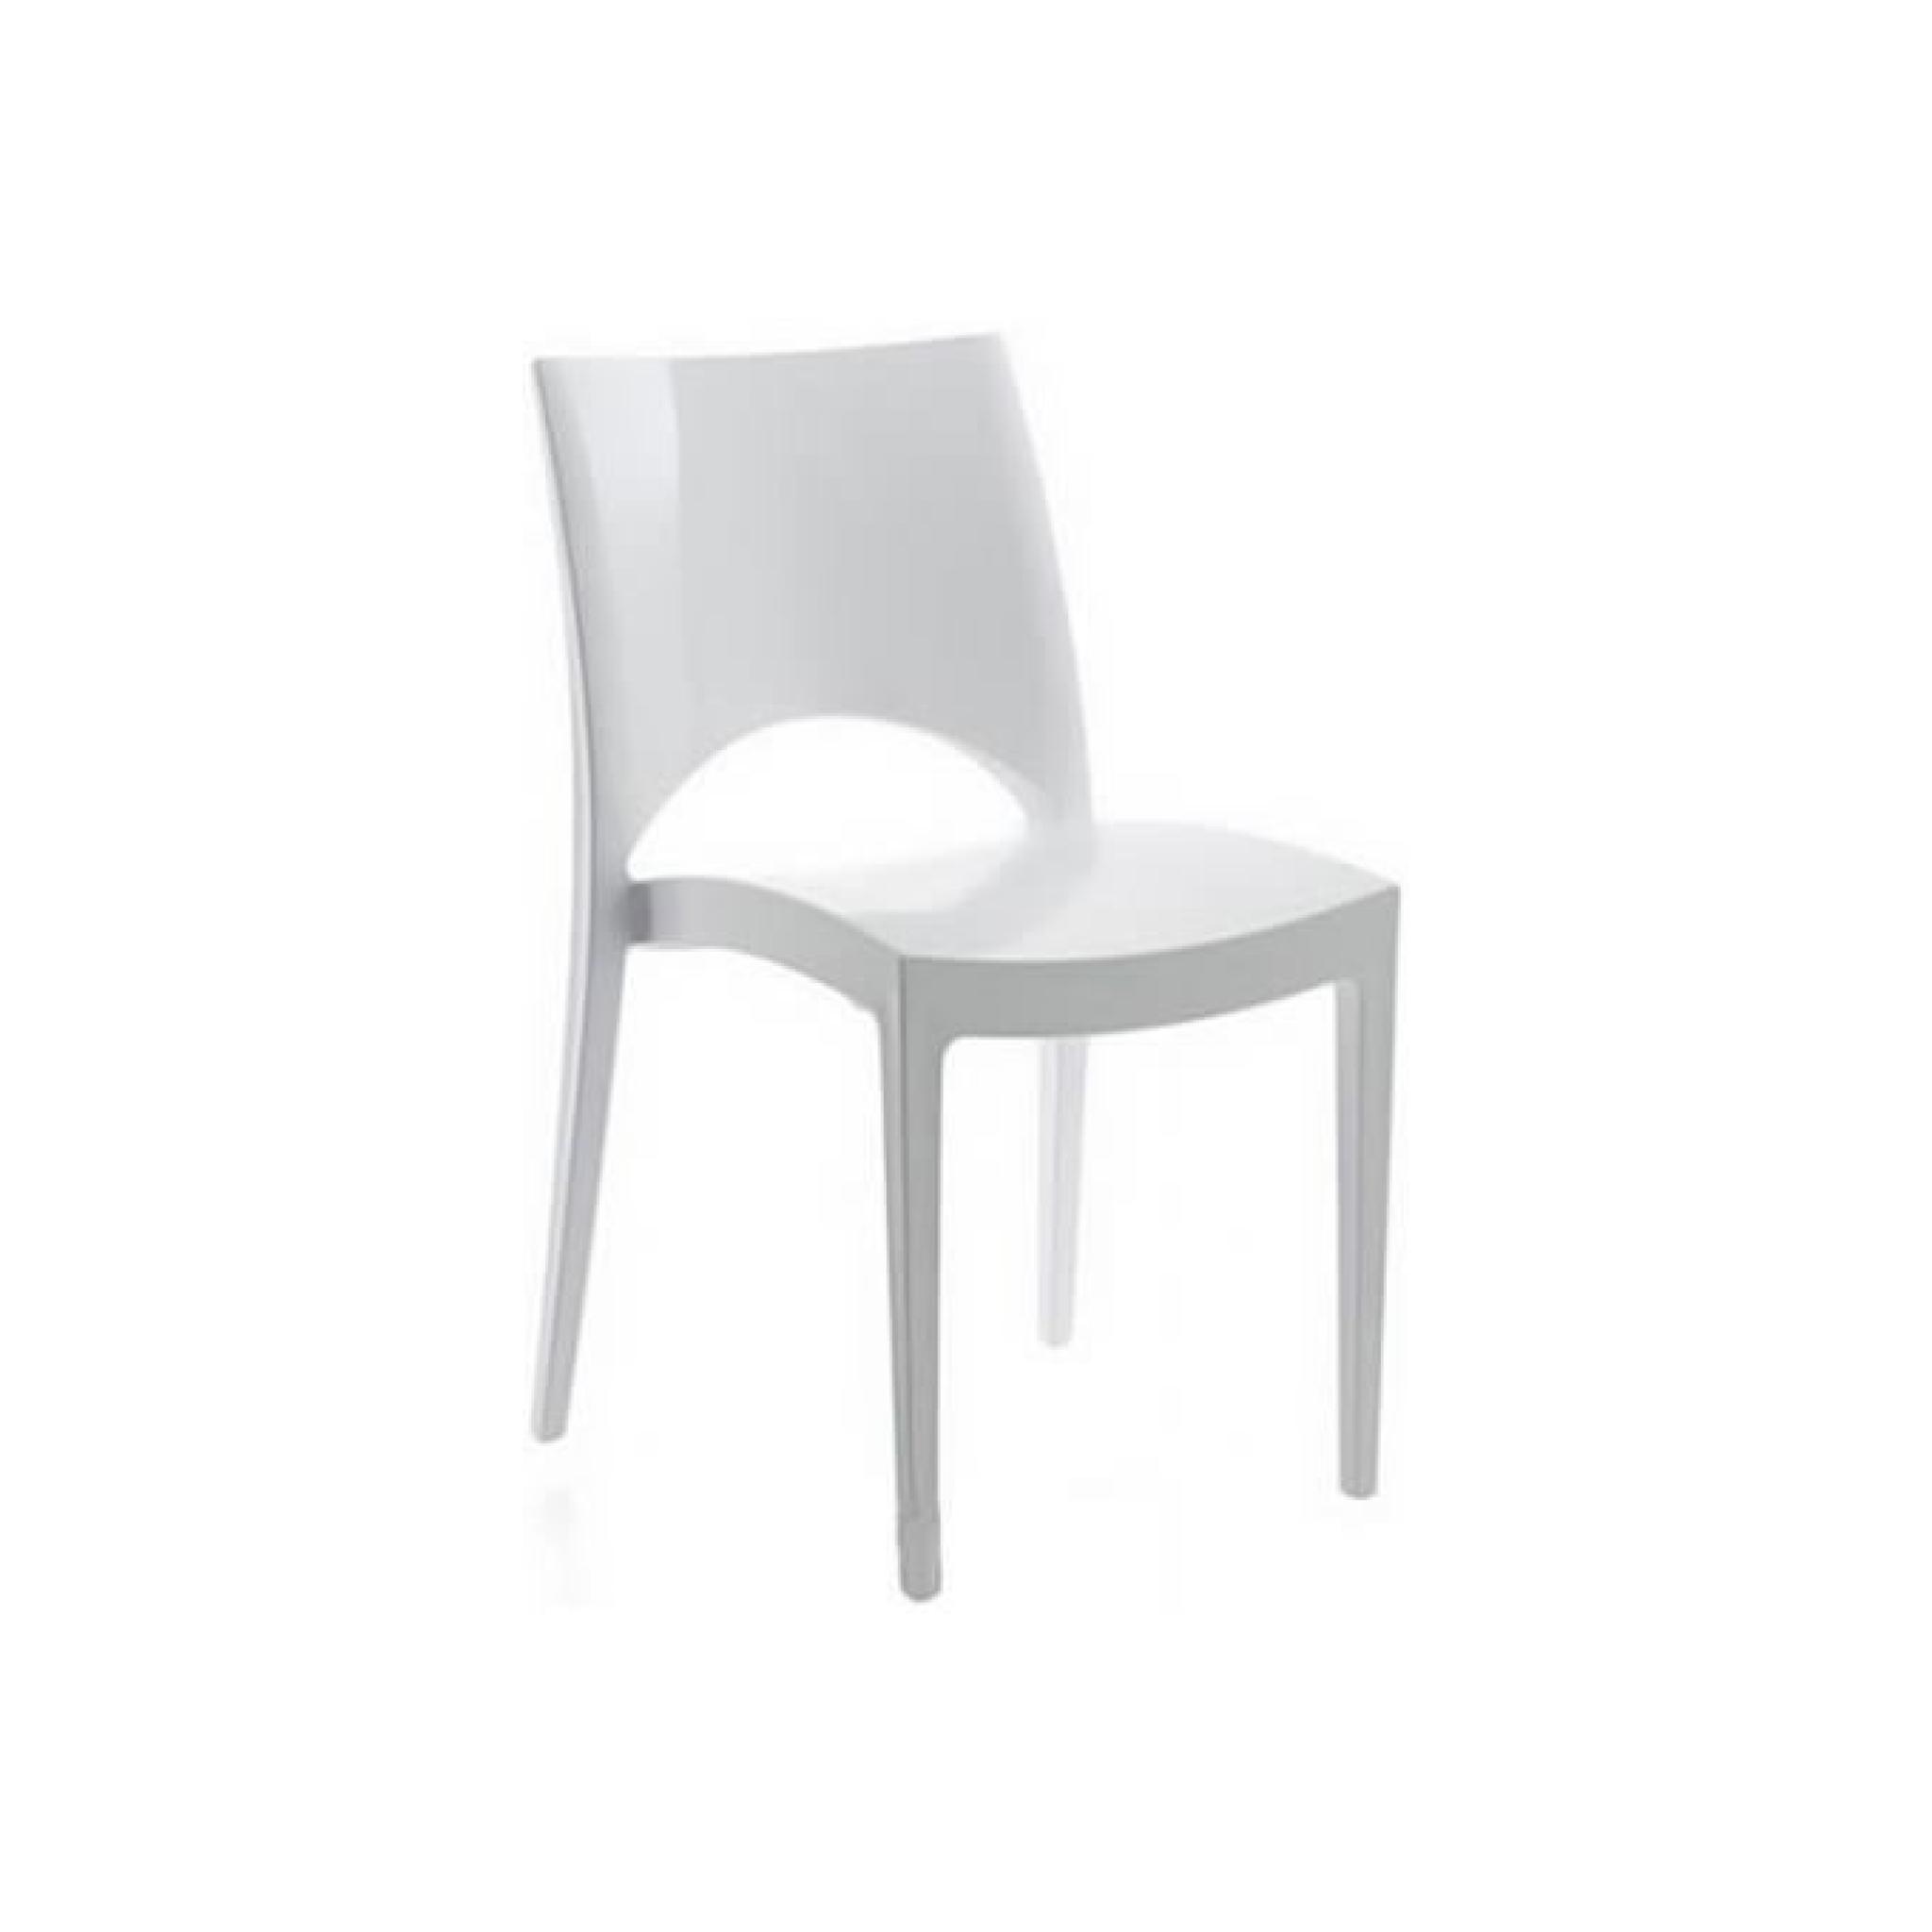 Chaise contemporaine design blanche Arlequin